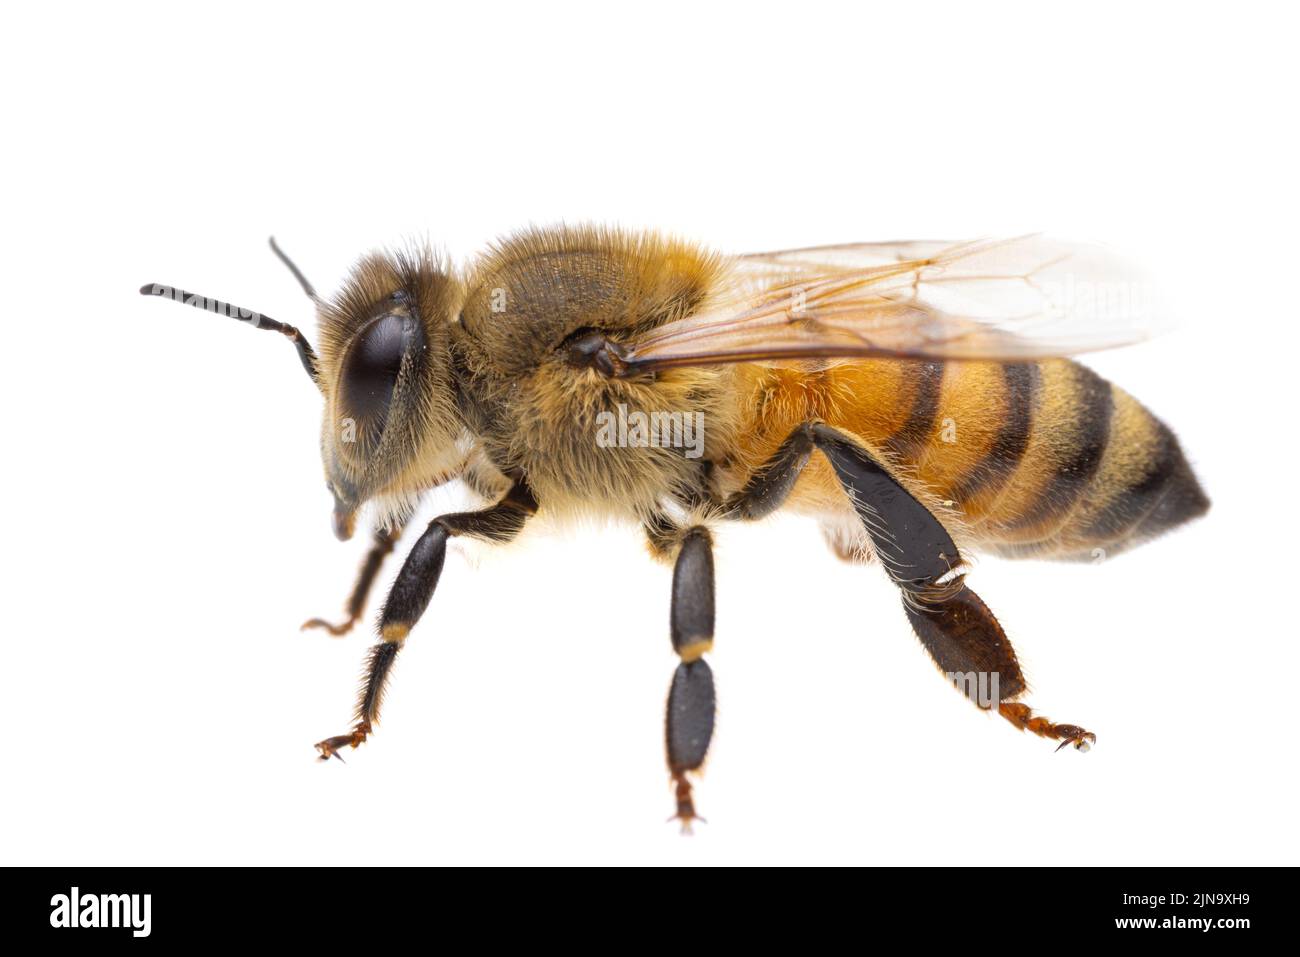 Insectes d'europe - abeilles: Vue latérale macro de l'abeille européenne ( APIS mellifera) isolée sur fond blanc - de gauche à droite Banque D'Images